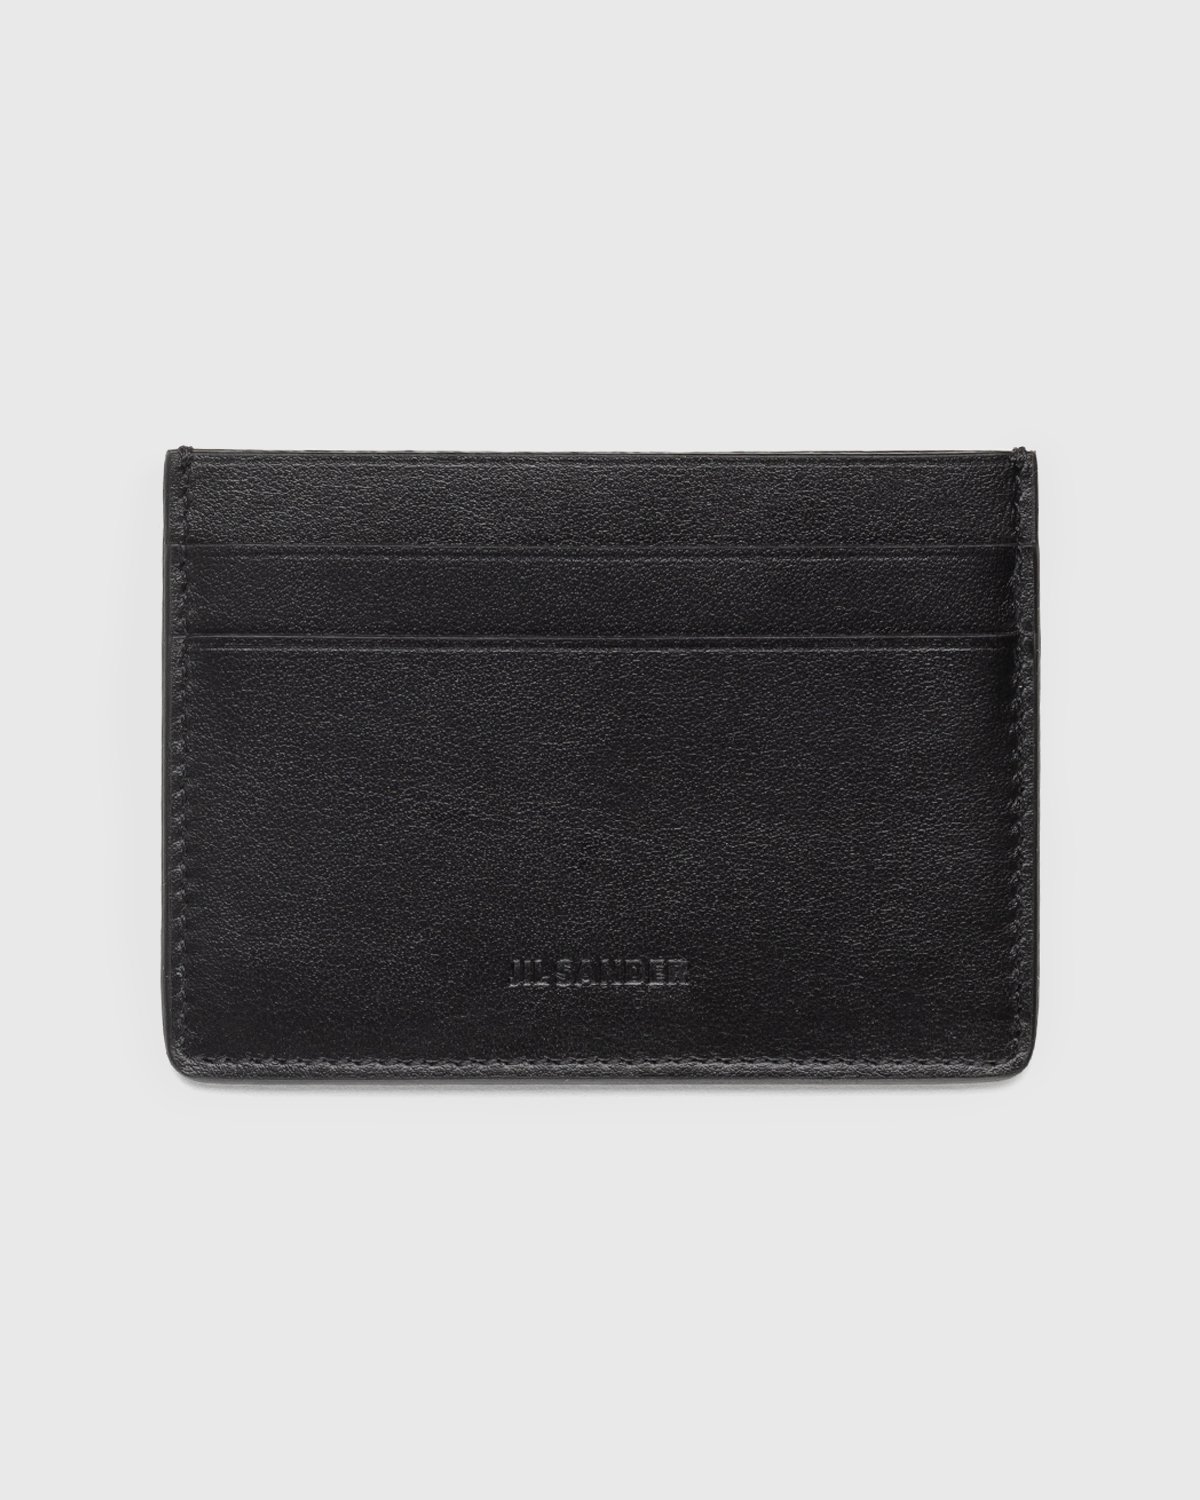 Jil Sander - Leather Card Holder Black - Accessories - Black - Image 1